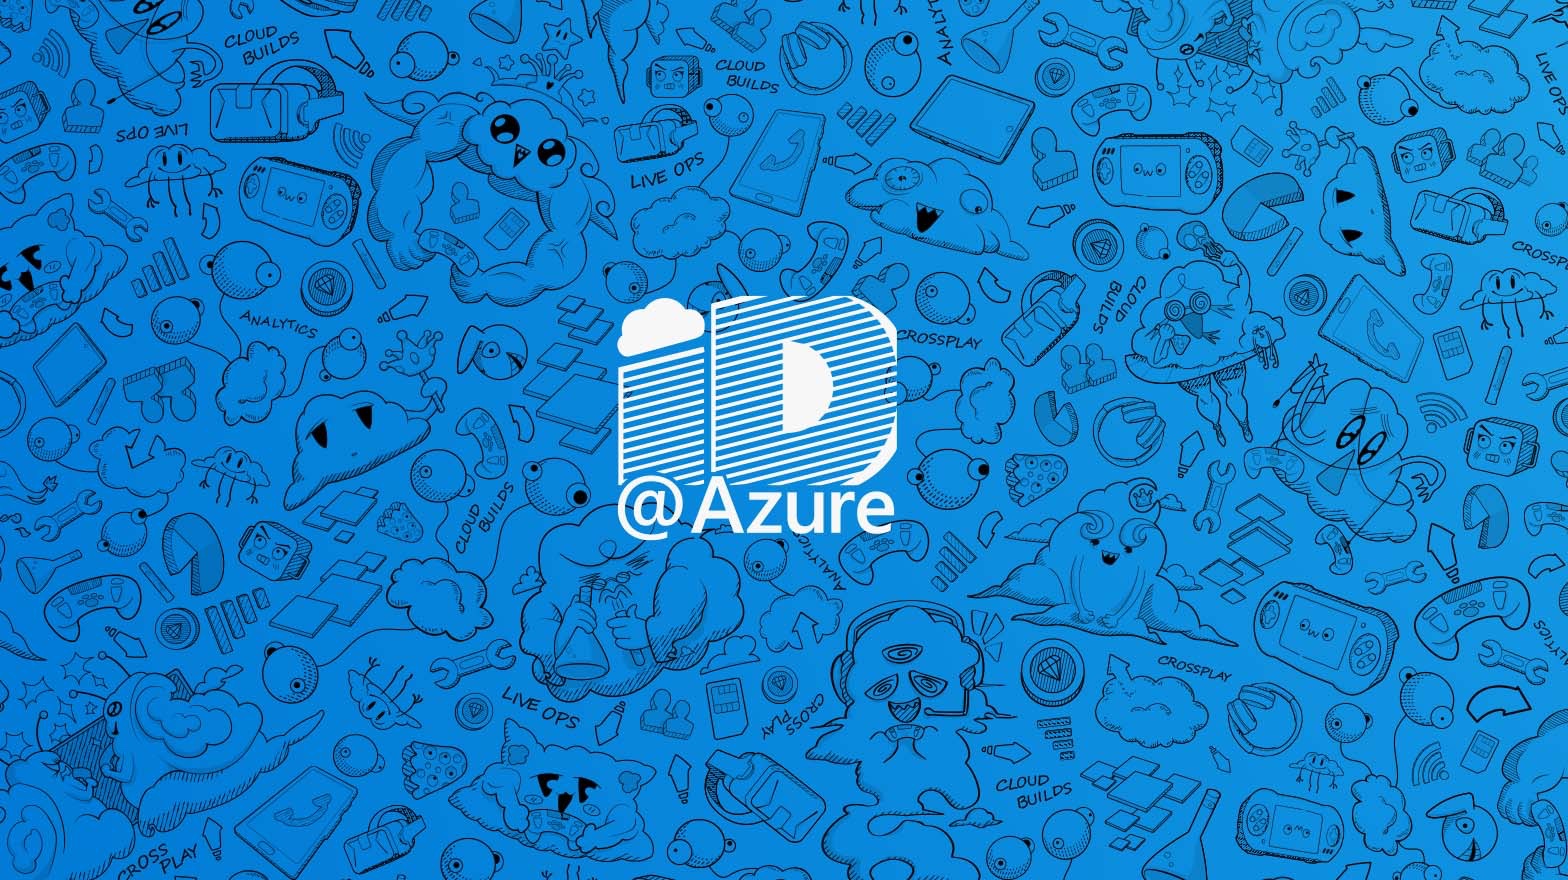 ID@Azure logo on blue background